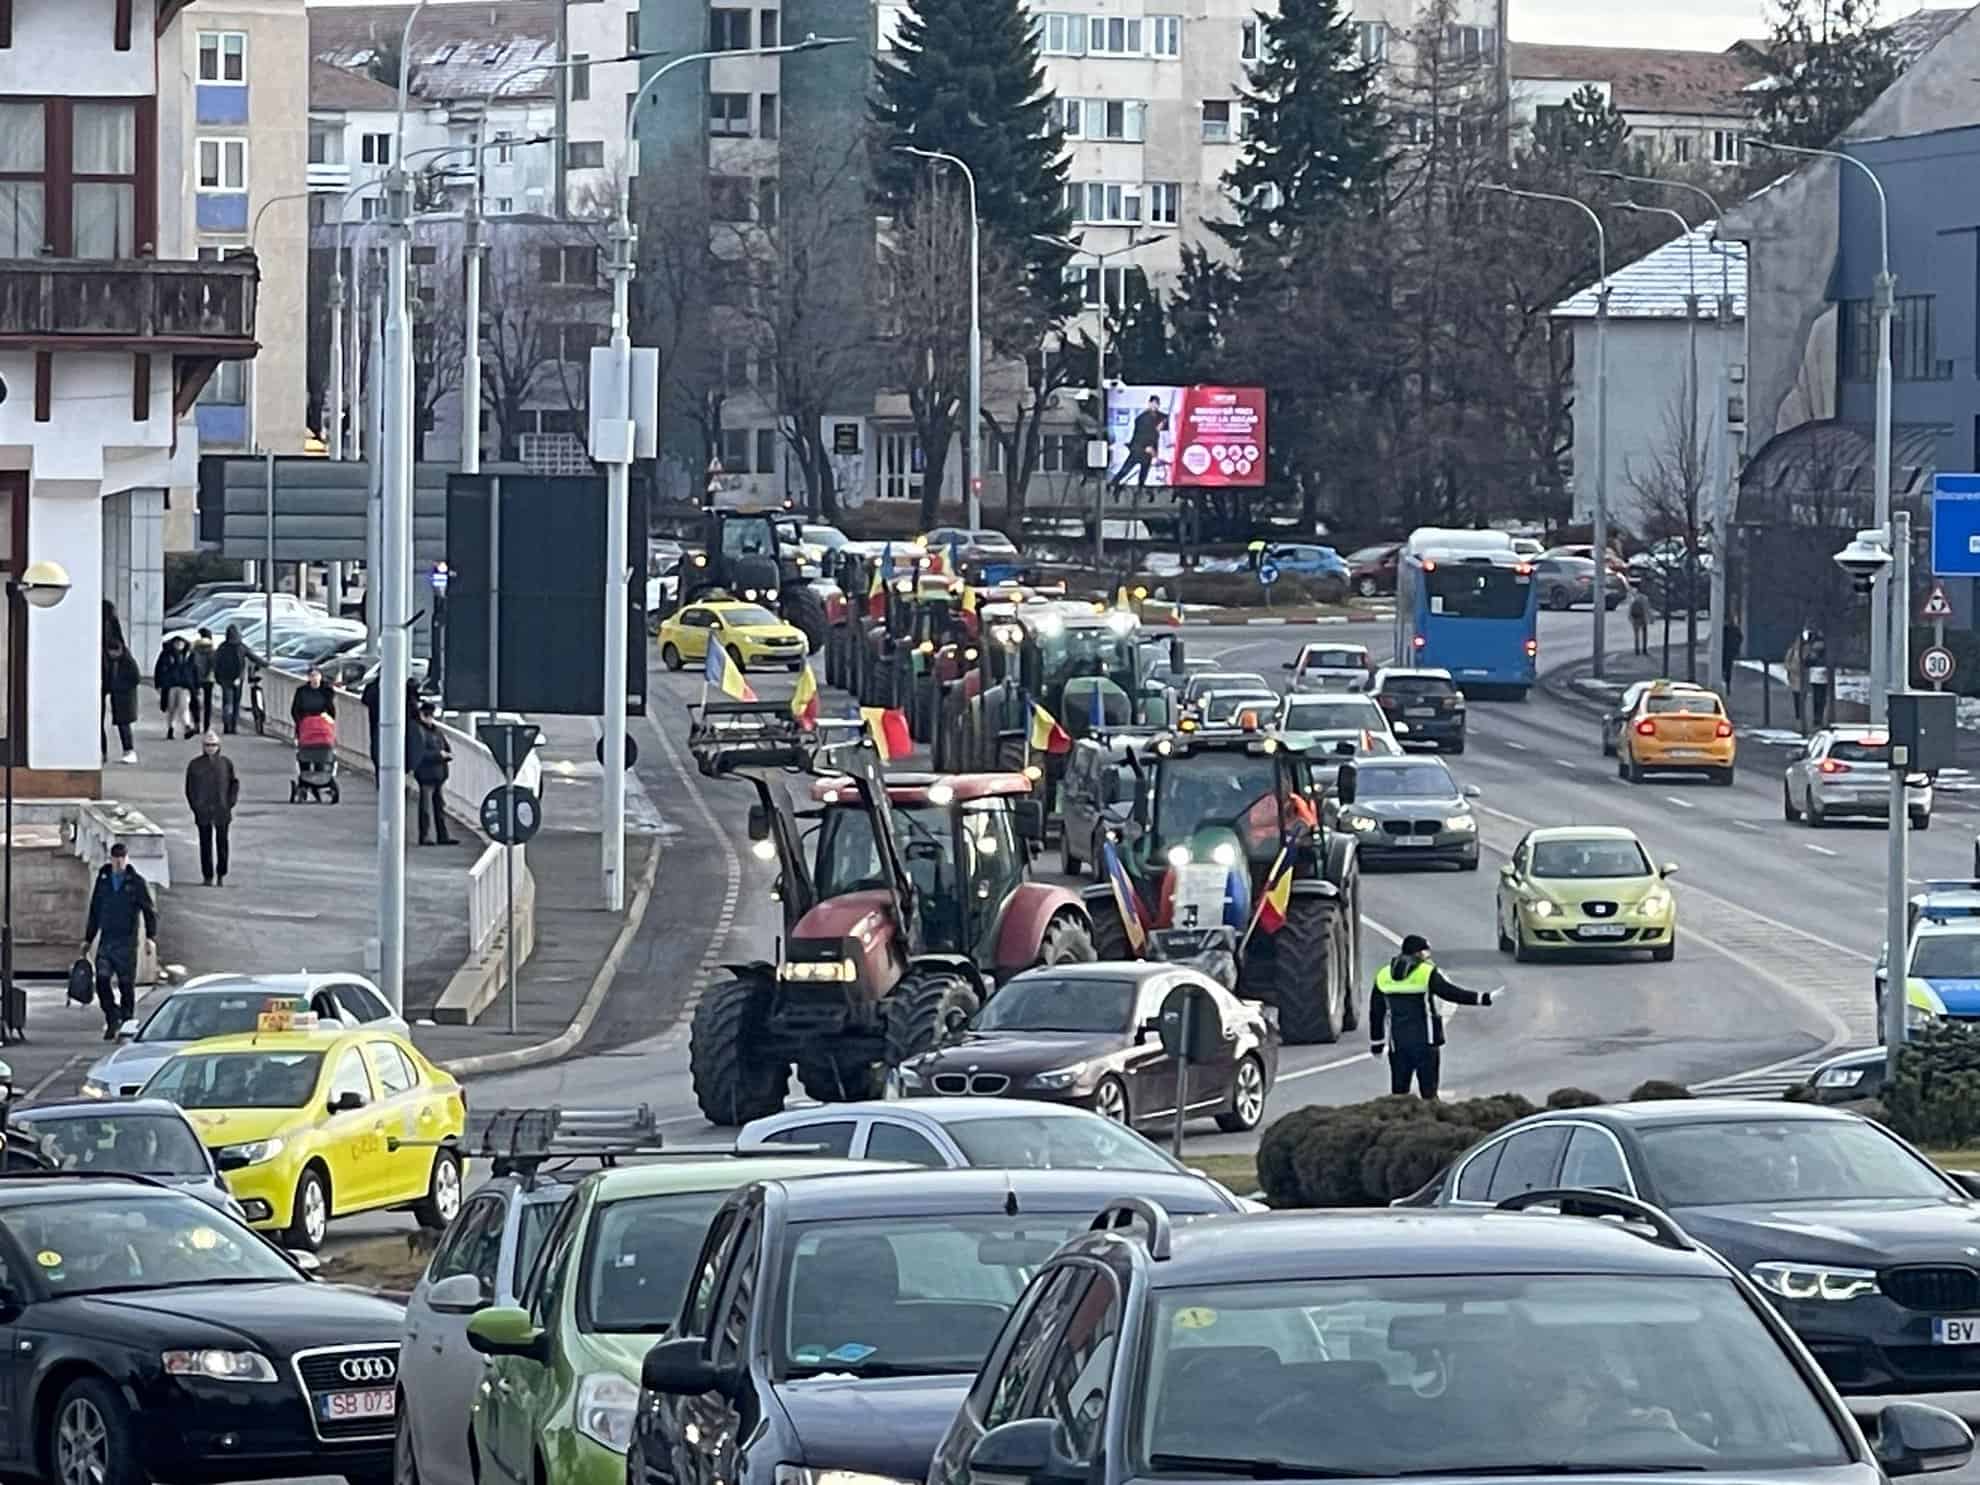 protestul fermierilor la sibiu continuă. circulă cu tractoarele pe străzile din municipiu (live text, video, foto)